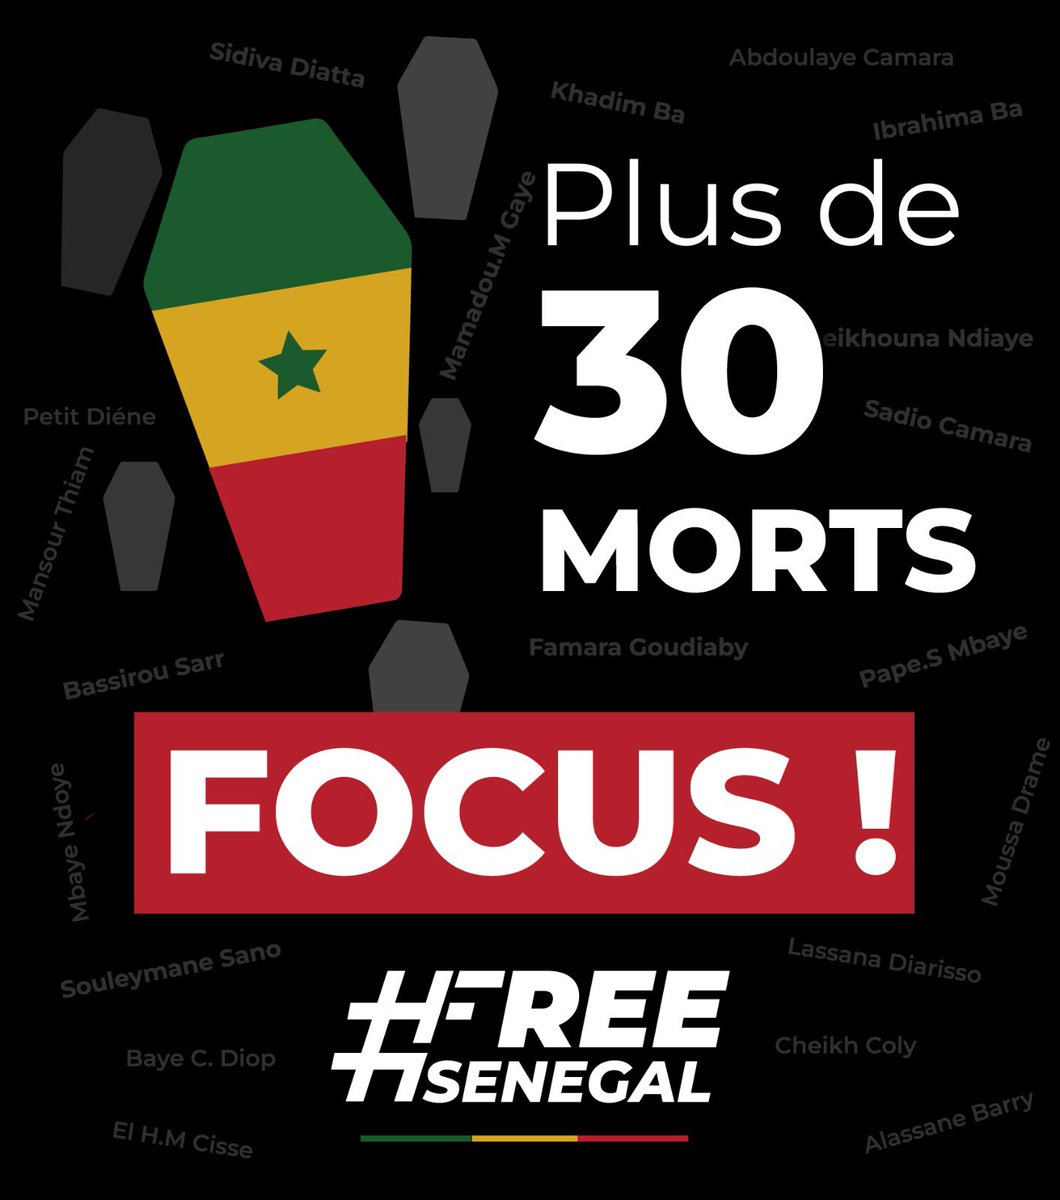 🚨🚨🚨

Waruñ abandonner !
Pour la mémoire de nos MARTYRS.

#Focus
#FreeSenegal